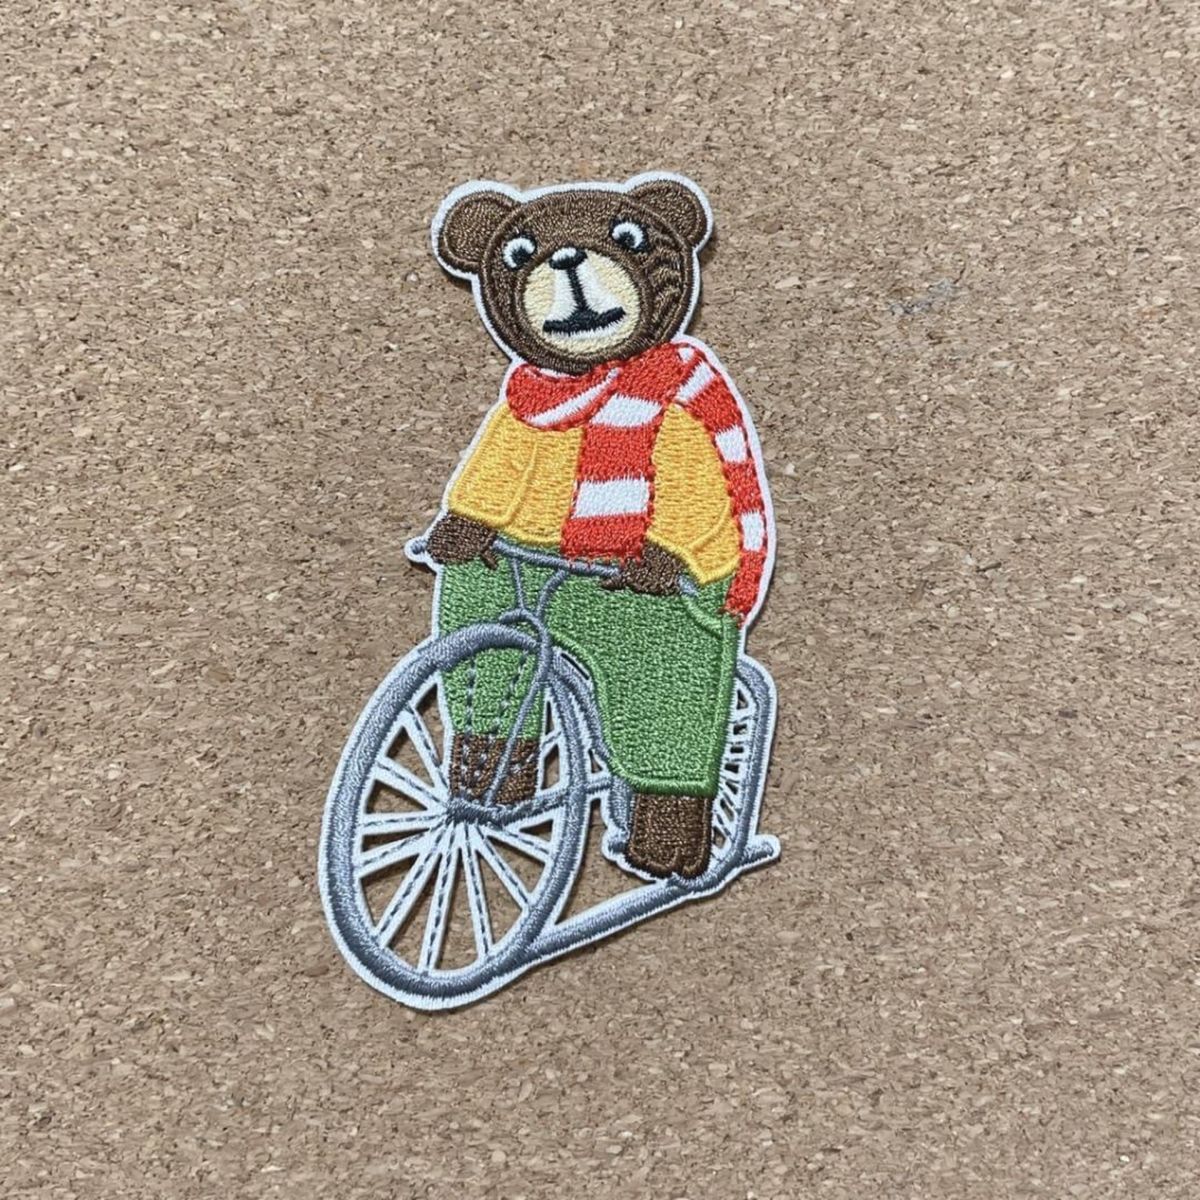 158 シール ワッペン 熊 自転車 マフラー 刺繍 リメイク ハンドメイド くま クマ